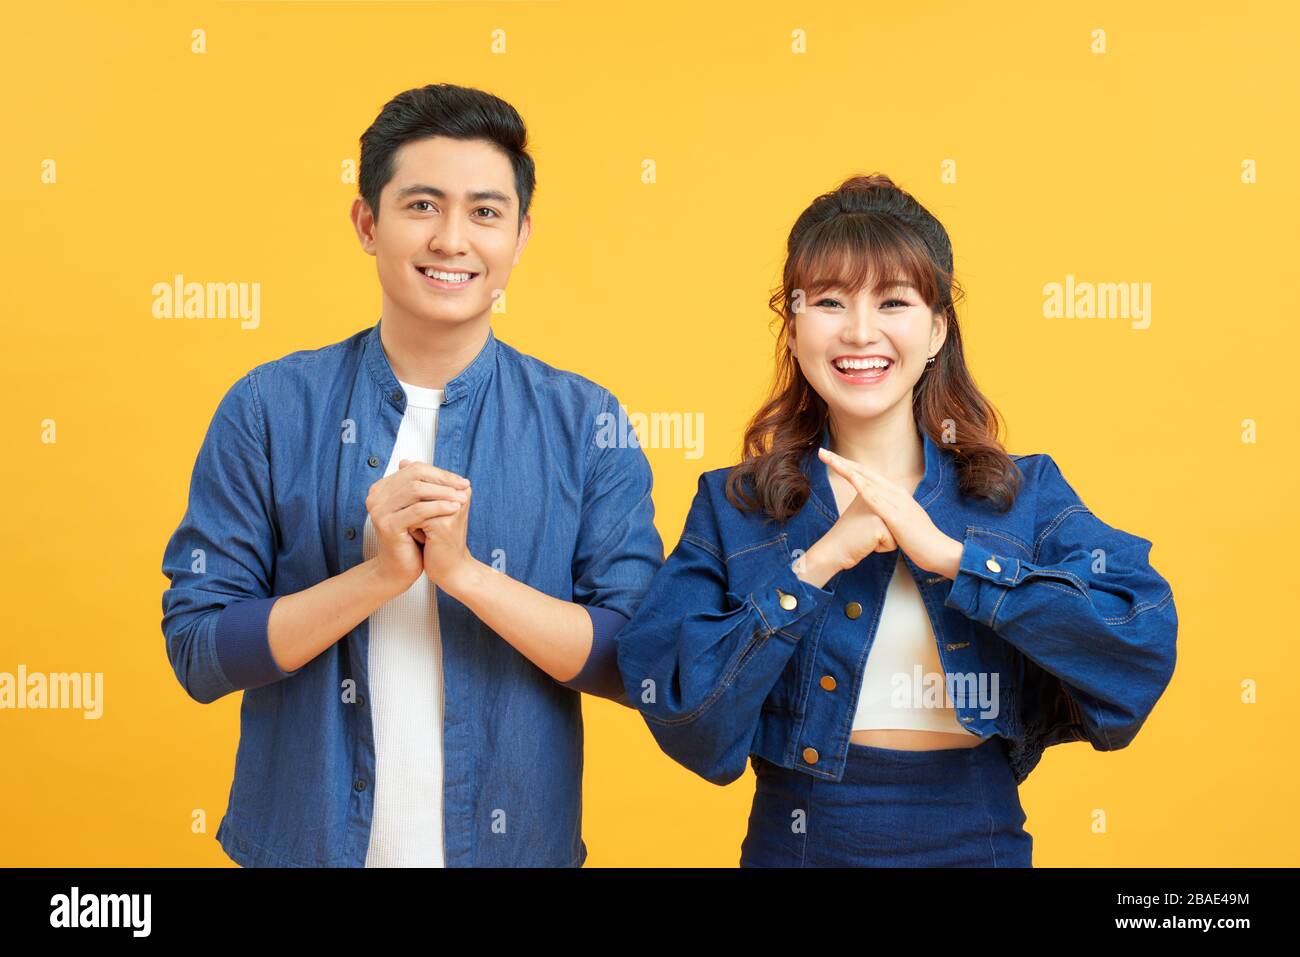 Junge Paare posieren in einem gelben Hintergrund, die Hände an der Kamera mit Glückwunsch Geste einklammern. Stockfoto